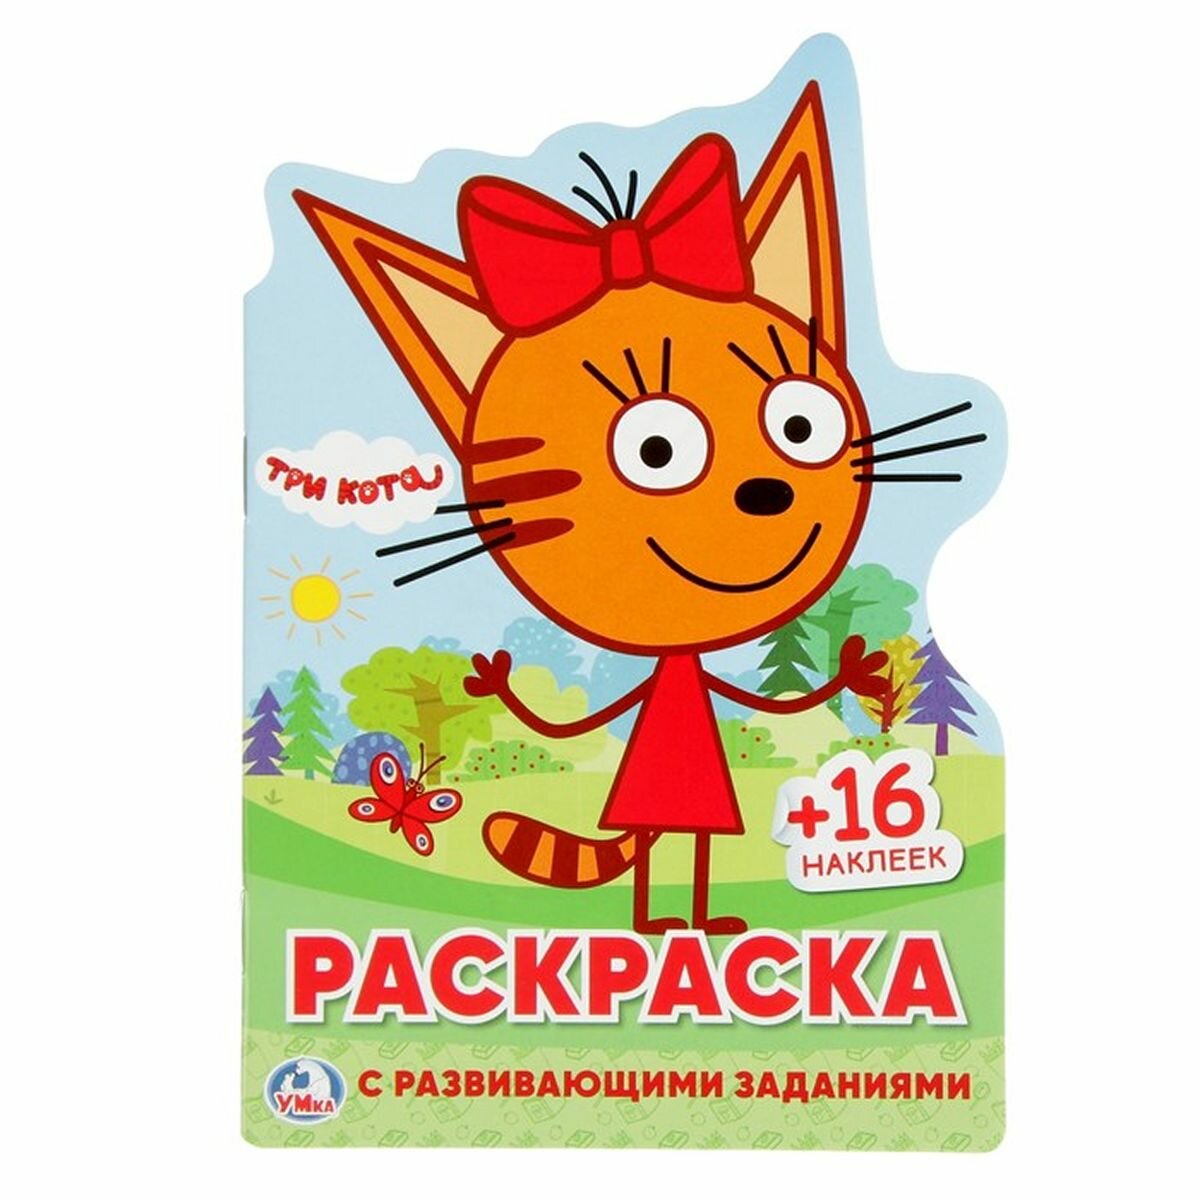 Развивающая раскраска с вырубкой в виде персонажа и многоразовыми наклейками "Три кота", 1 шт.